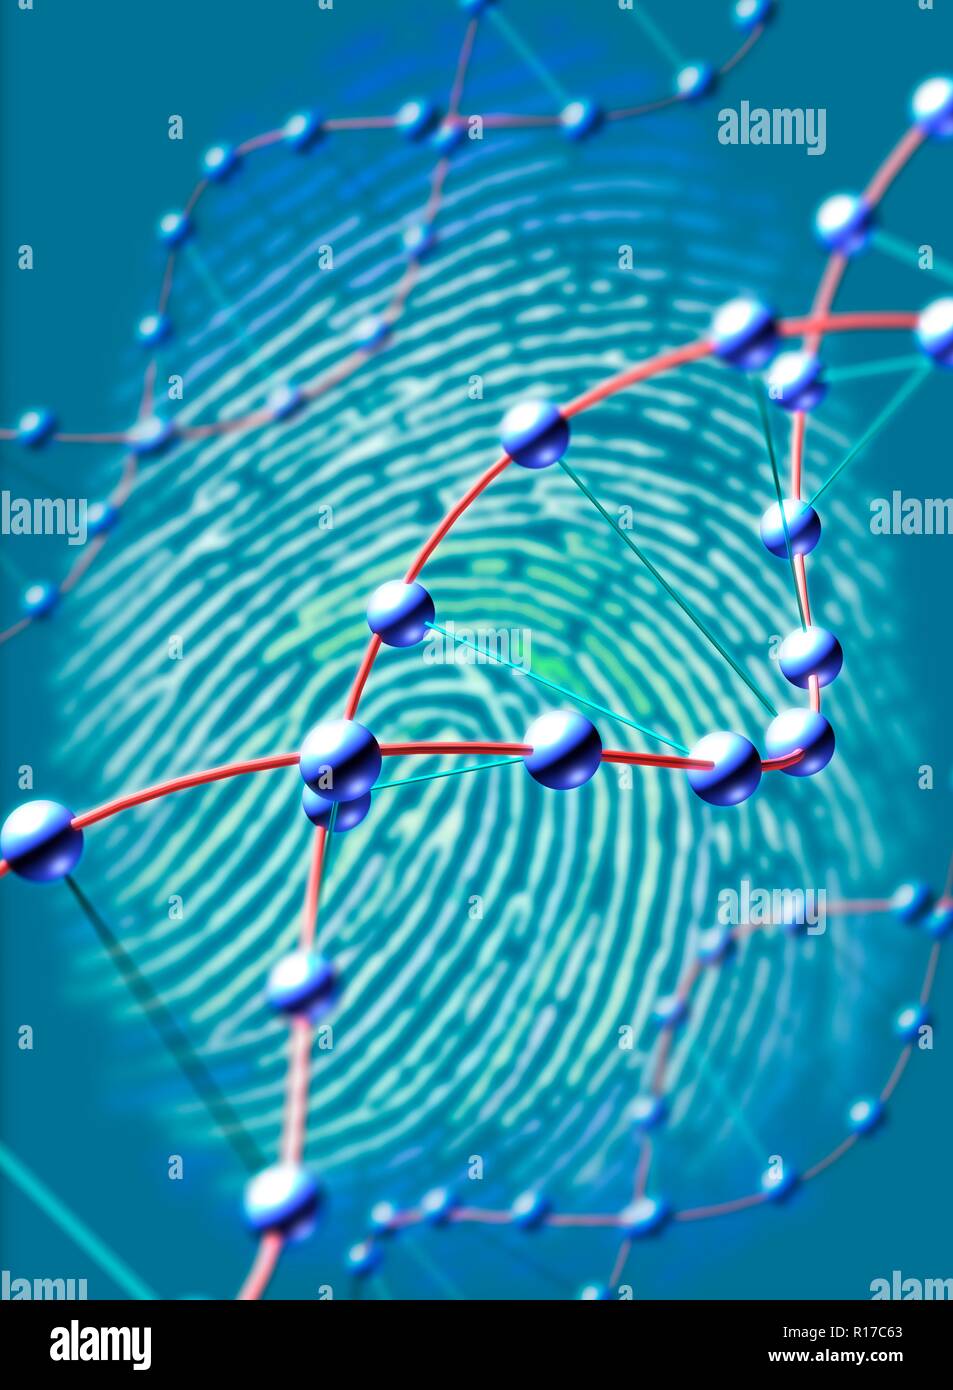 Digitaler Fingerabdruck. Abbildung eines menschlichen Fingerabdruck mit Stränge der DNA (Desoxyribonukleinsäure) davor, als Symbol für das Konzept eines DNA-Fingerabdruck. Stockfoto